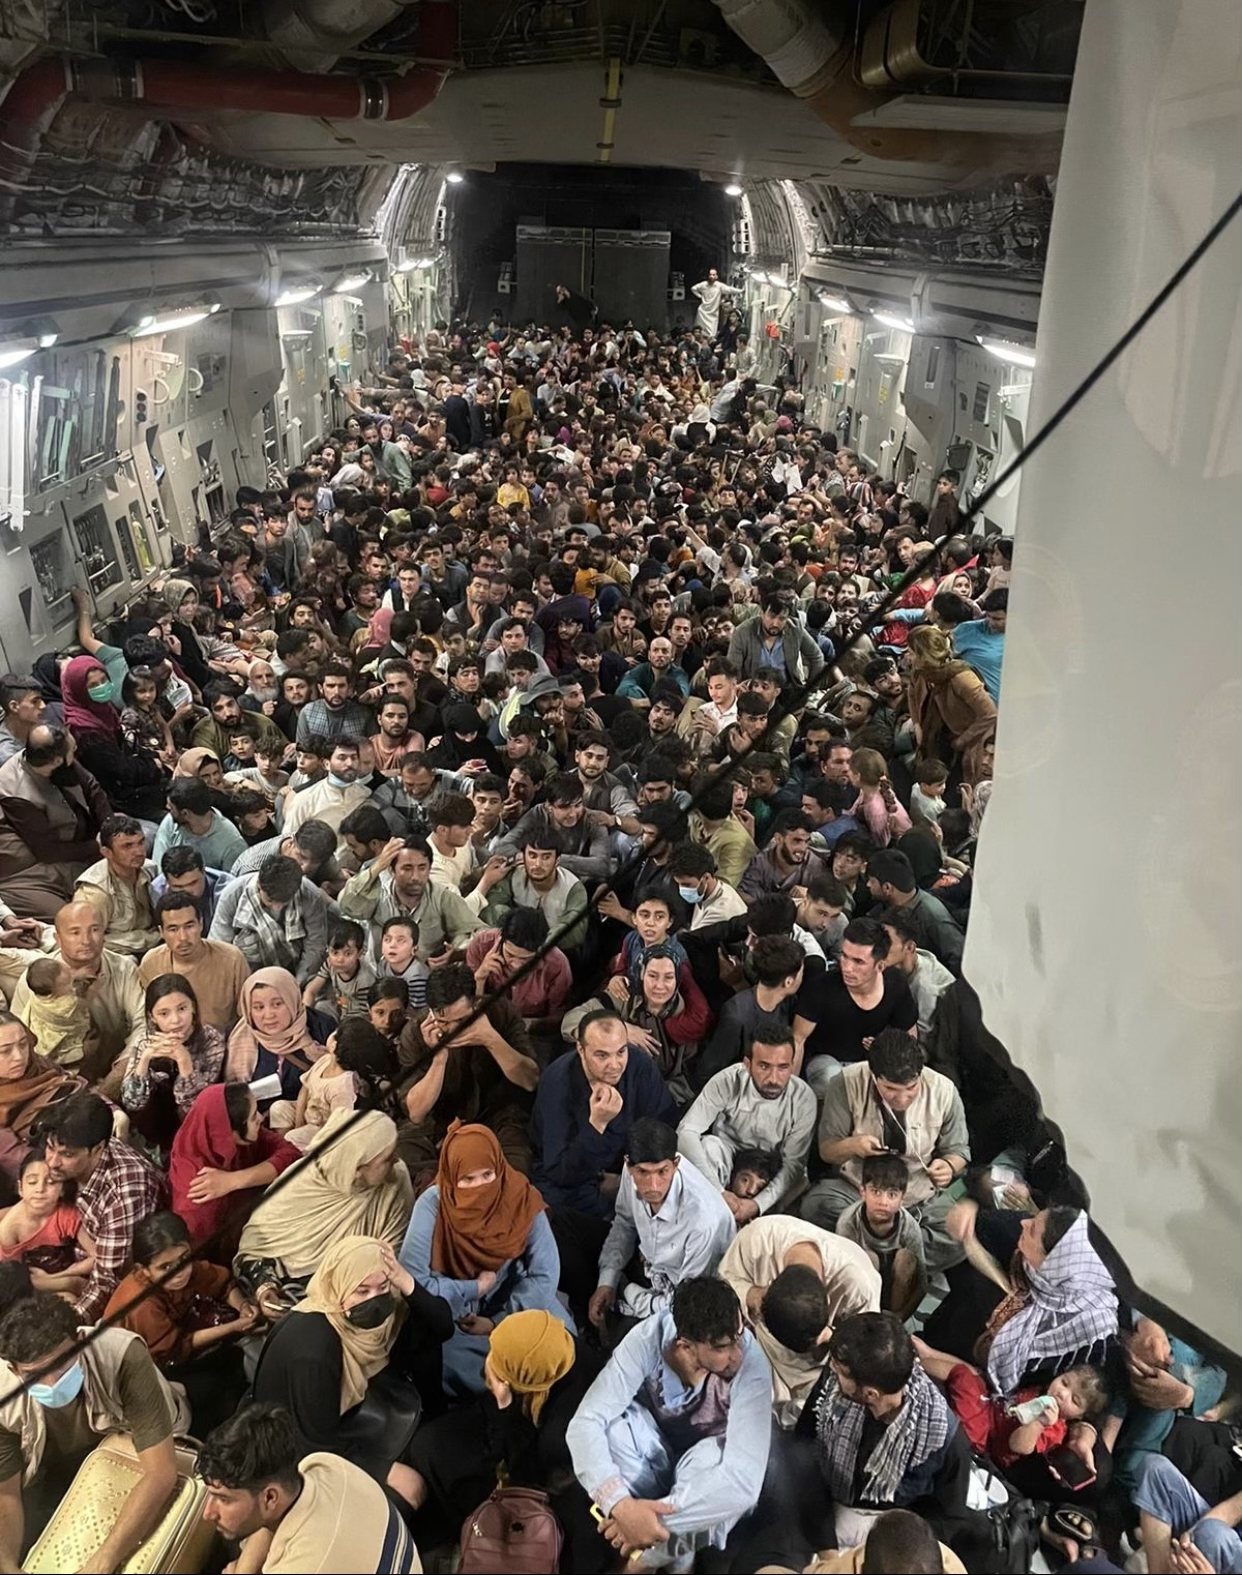 La foto completa sin recortar del interior de un C-17 de la Fuerza Aérea de los EE. UU. Voló desde Kabul a Qatar el 15 de agosto.

